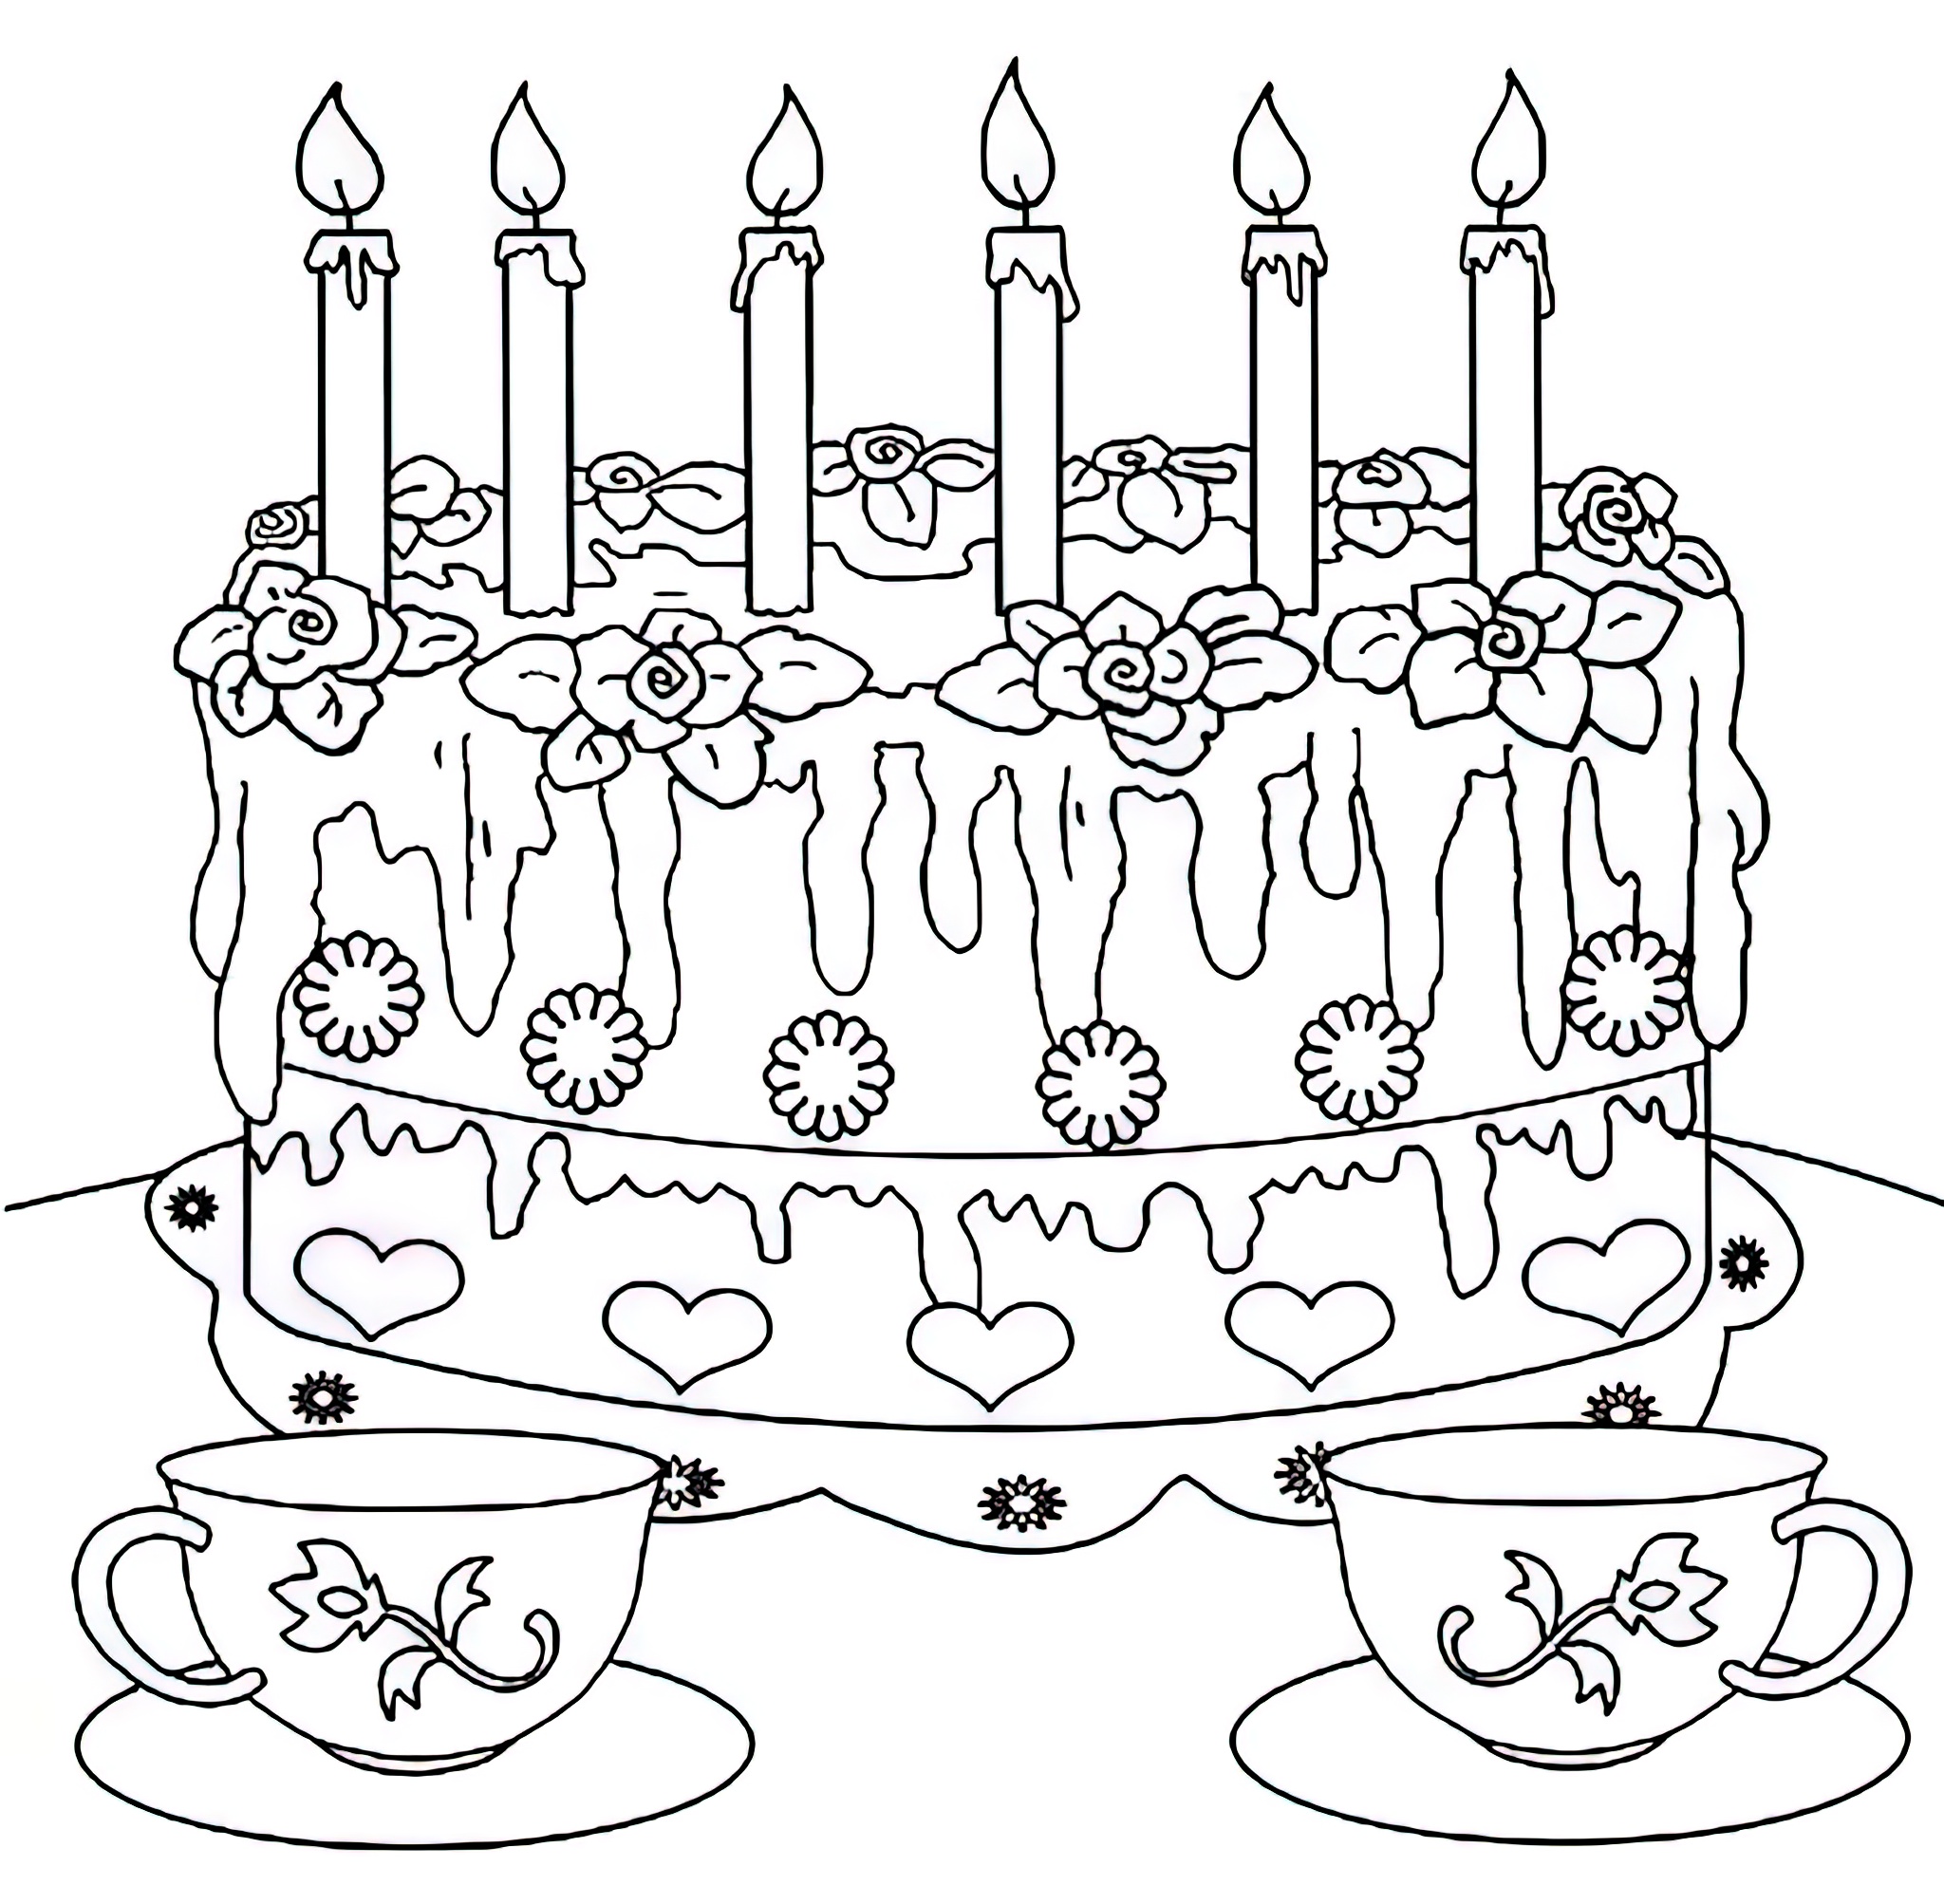 Распечатать картинку на торт. Раскраска "с днем рождения!". День рождения ИА раскраска. Раскраска торт на день рождения. Открытка раскраска с днем рождения.